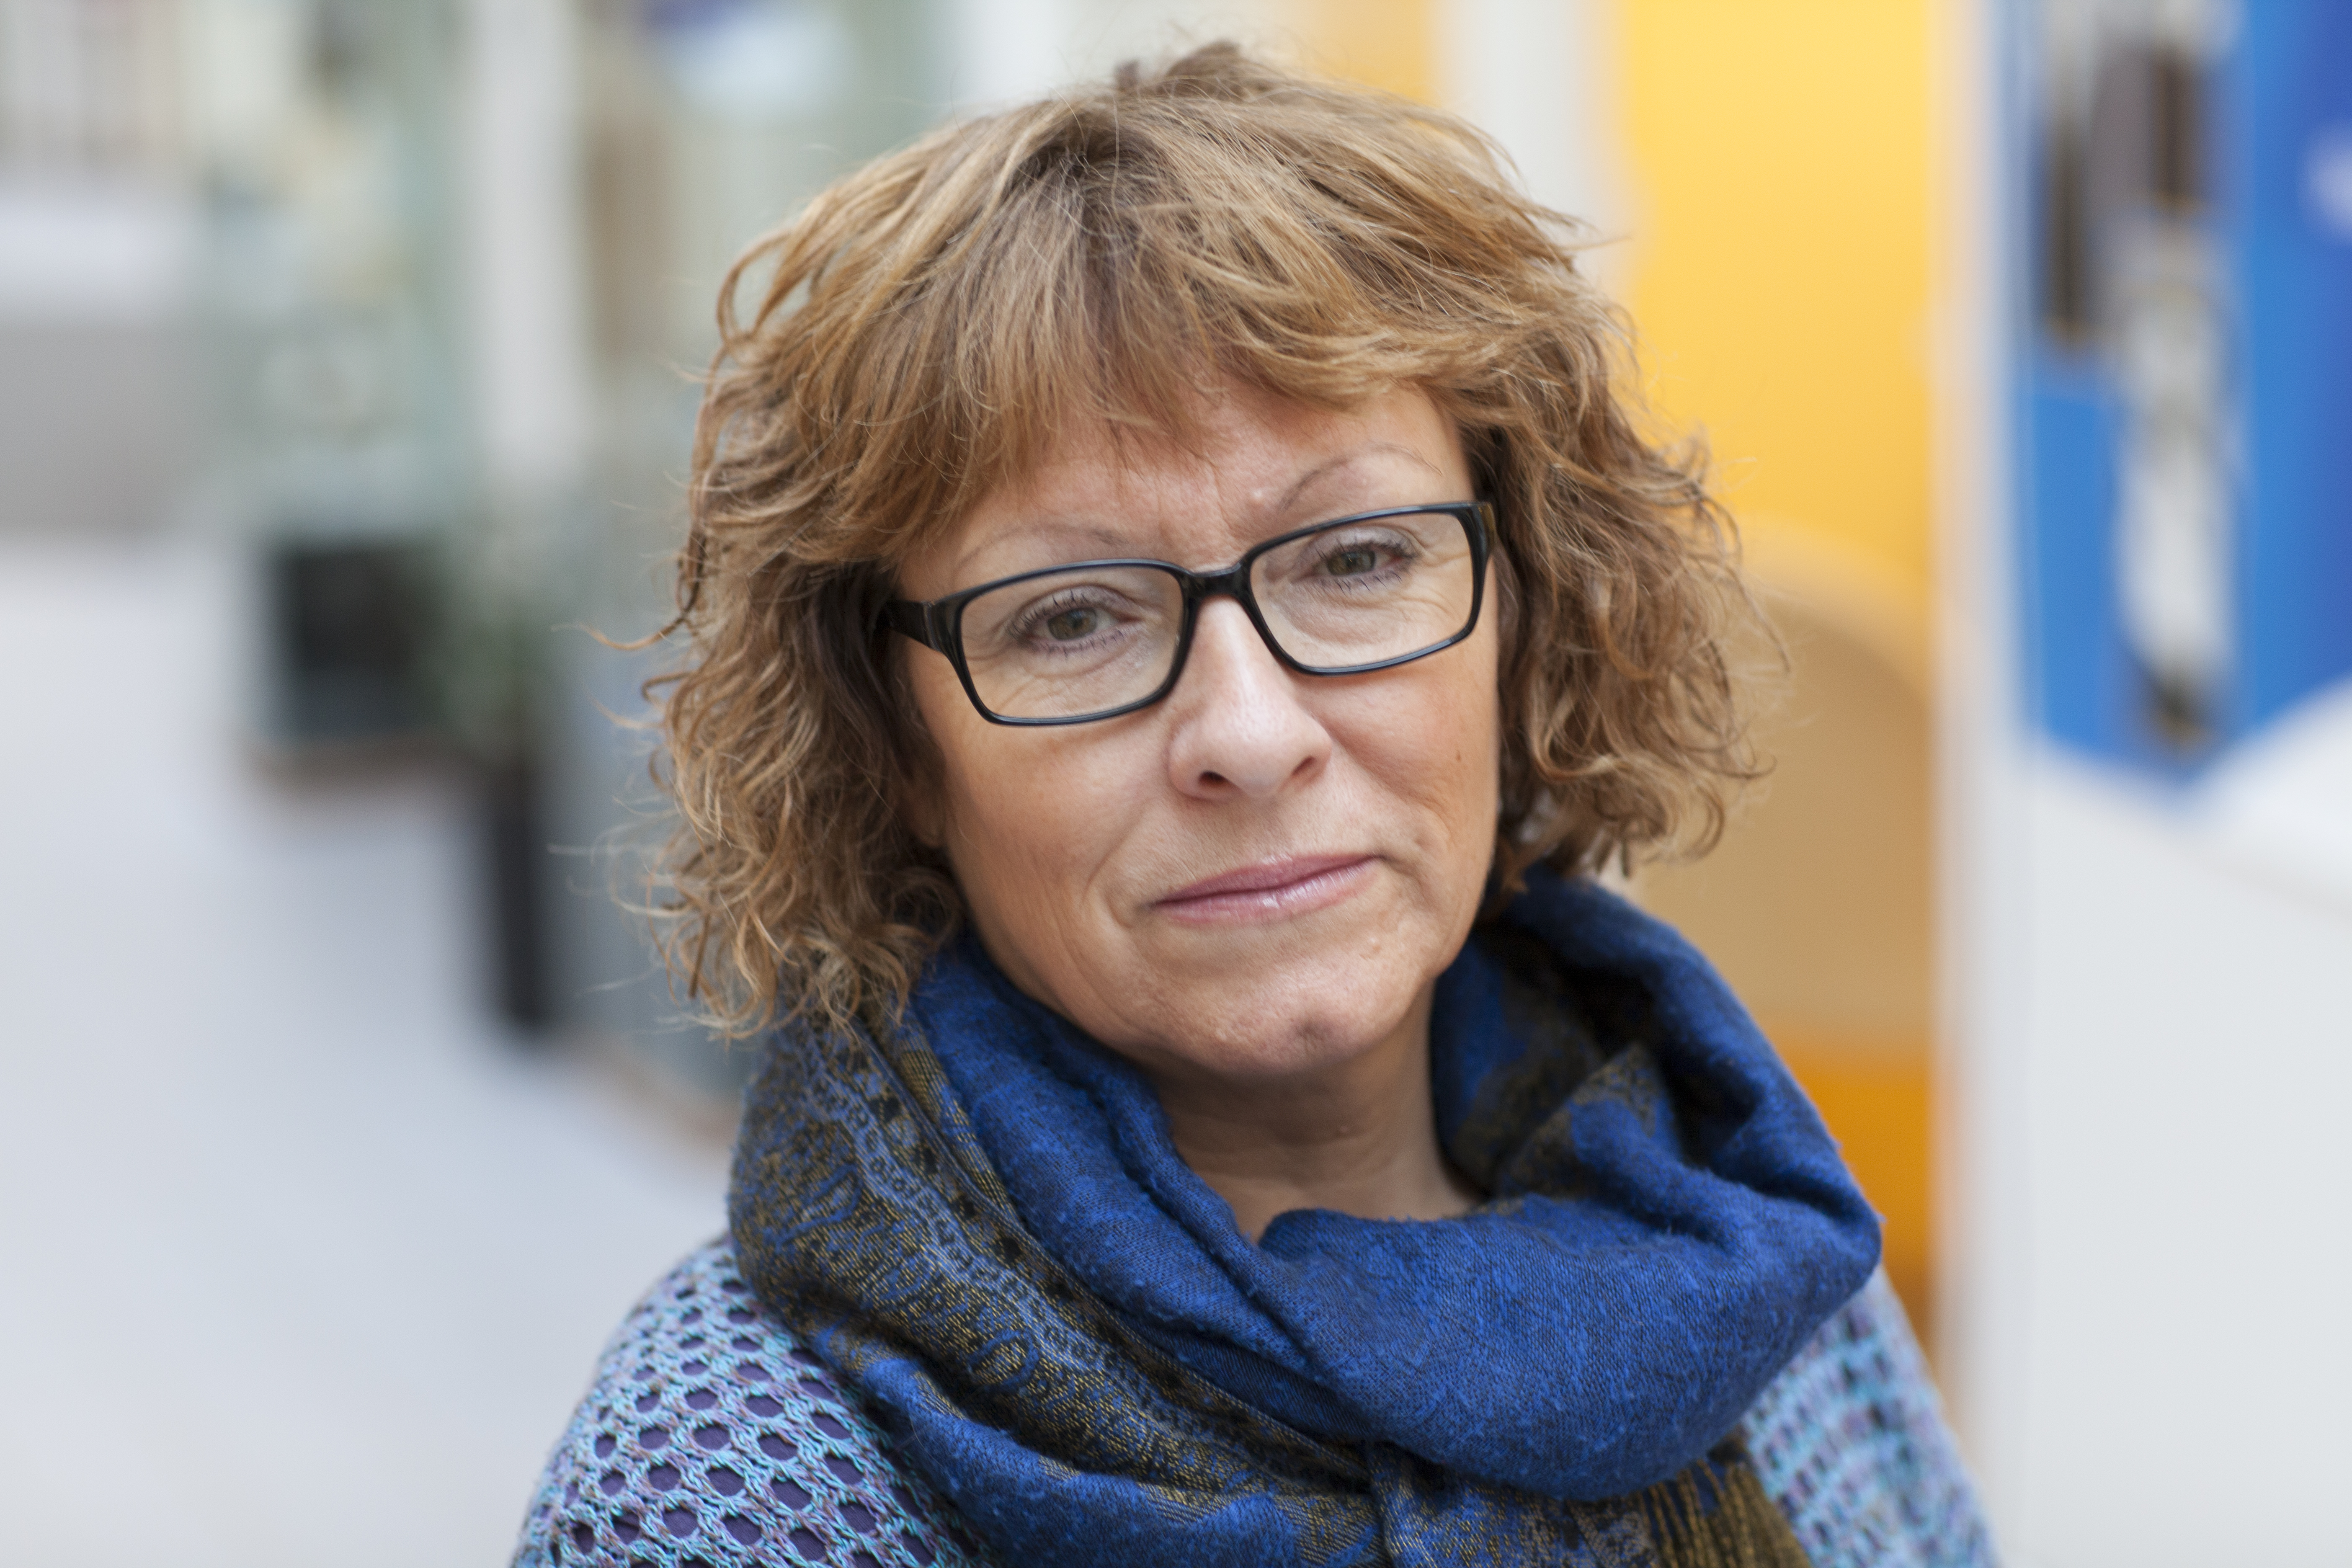 Førsteamanuensis ved Institutt for samfunnsmedisin og sykepleie ved NTNU, Wenche Karin Malmedal, har ledet studien om vold mot eldre på norske sykehjem. – Det er viktig å erkjenne at dette er et problem, selv om det er ubehagelig å snakke om, sier hun.